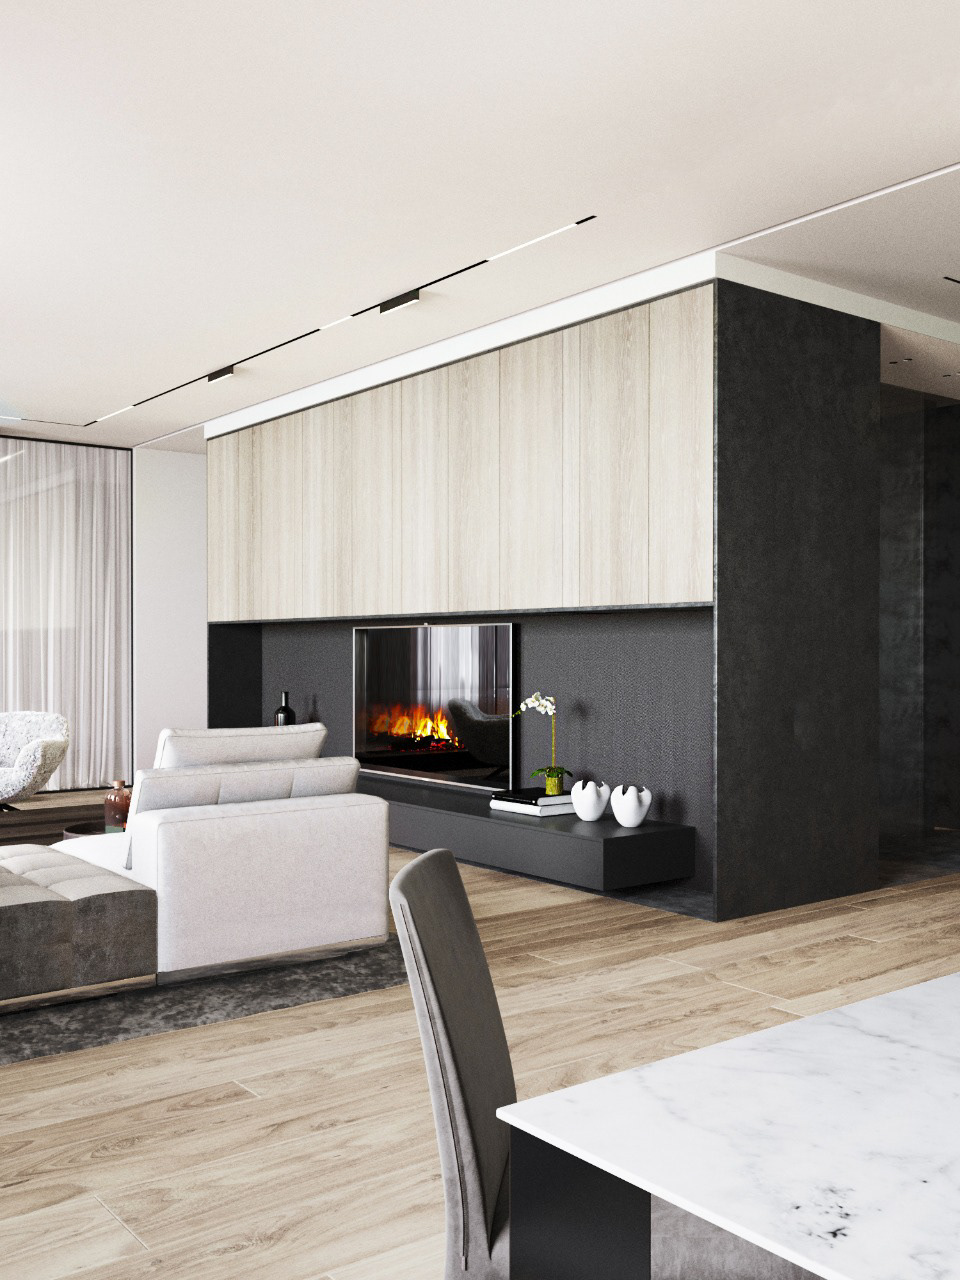 Interior design architecture Project room living kitchen Project concept Minotti molteni moltenidada